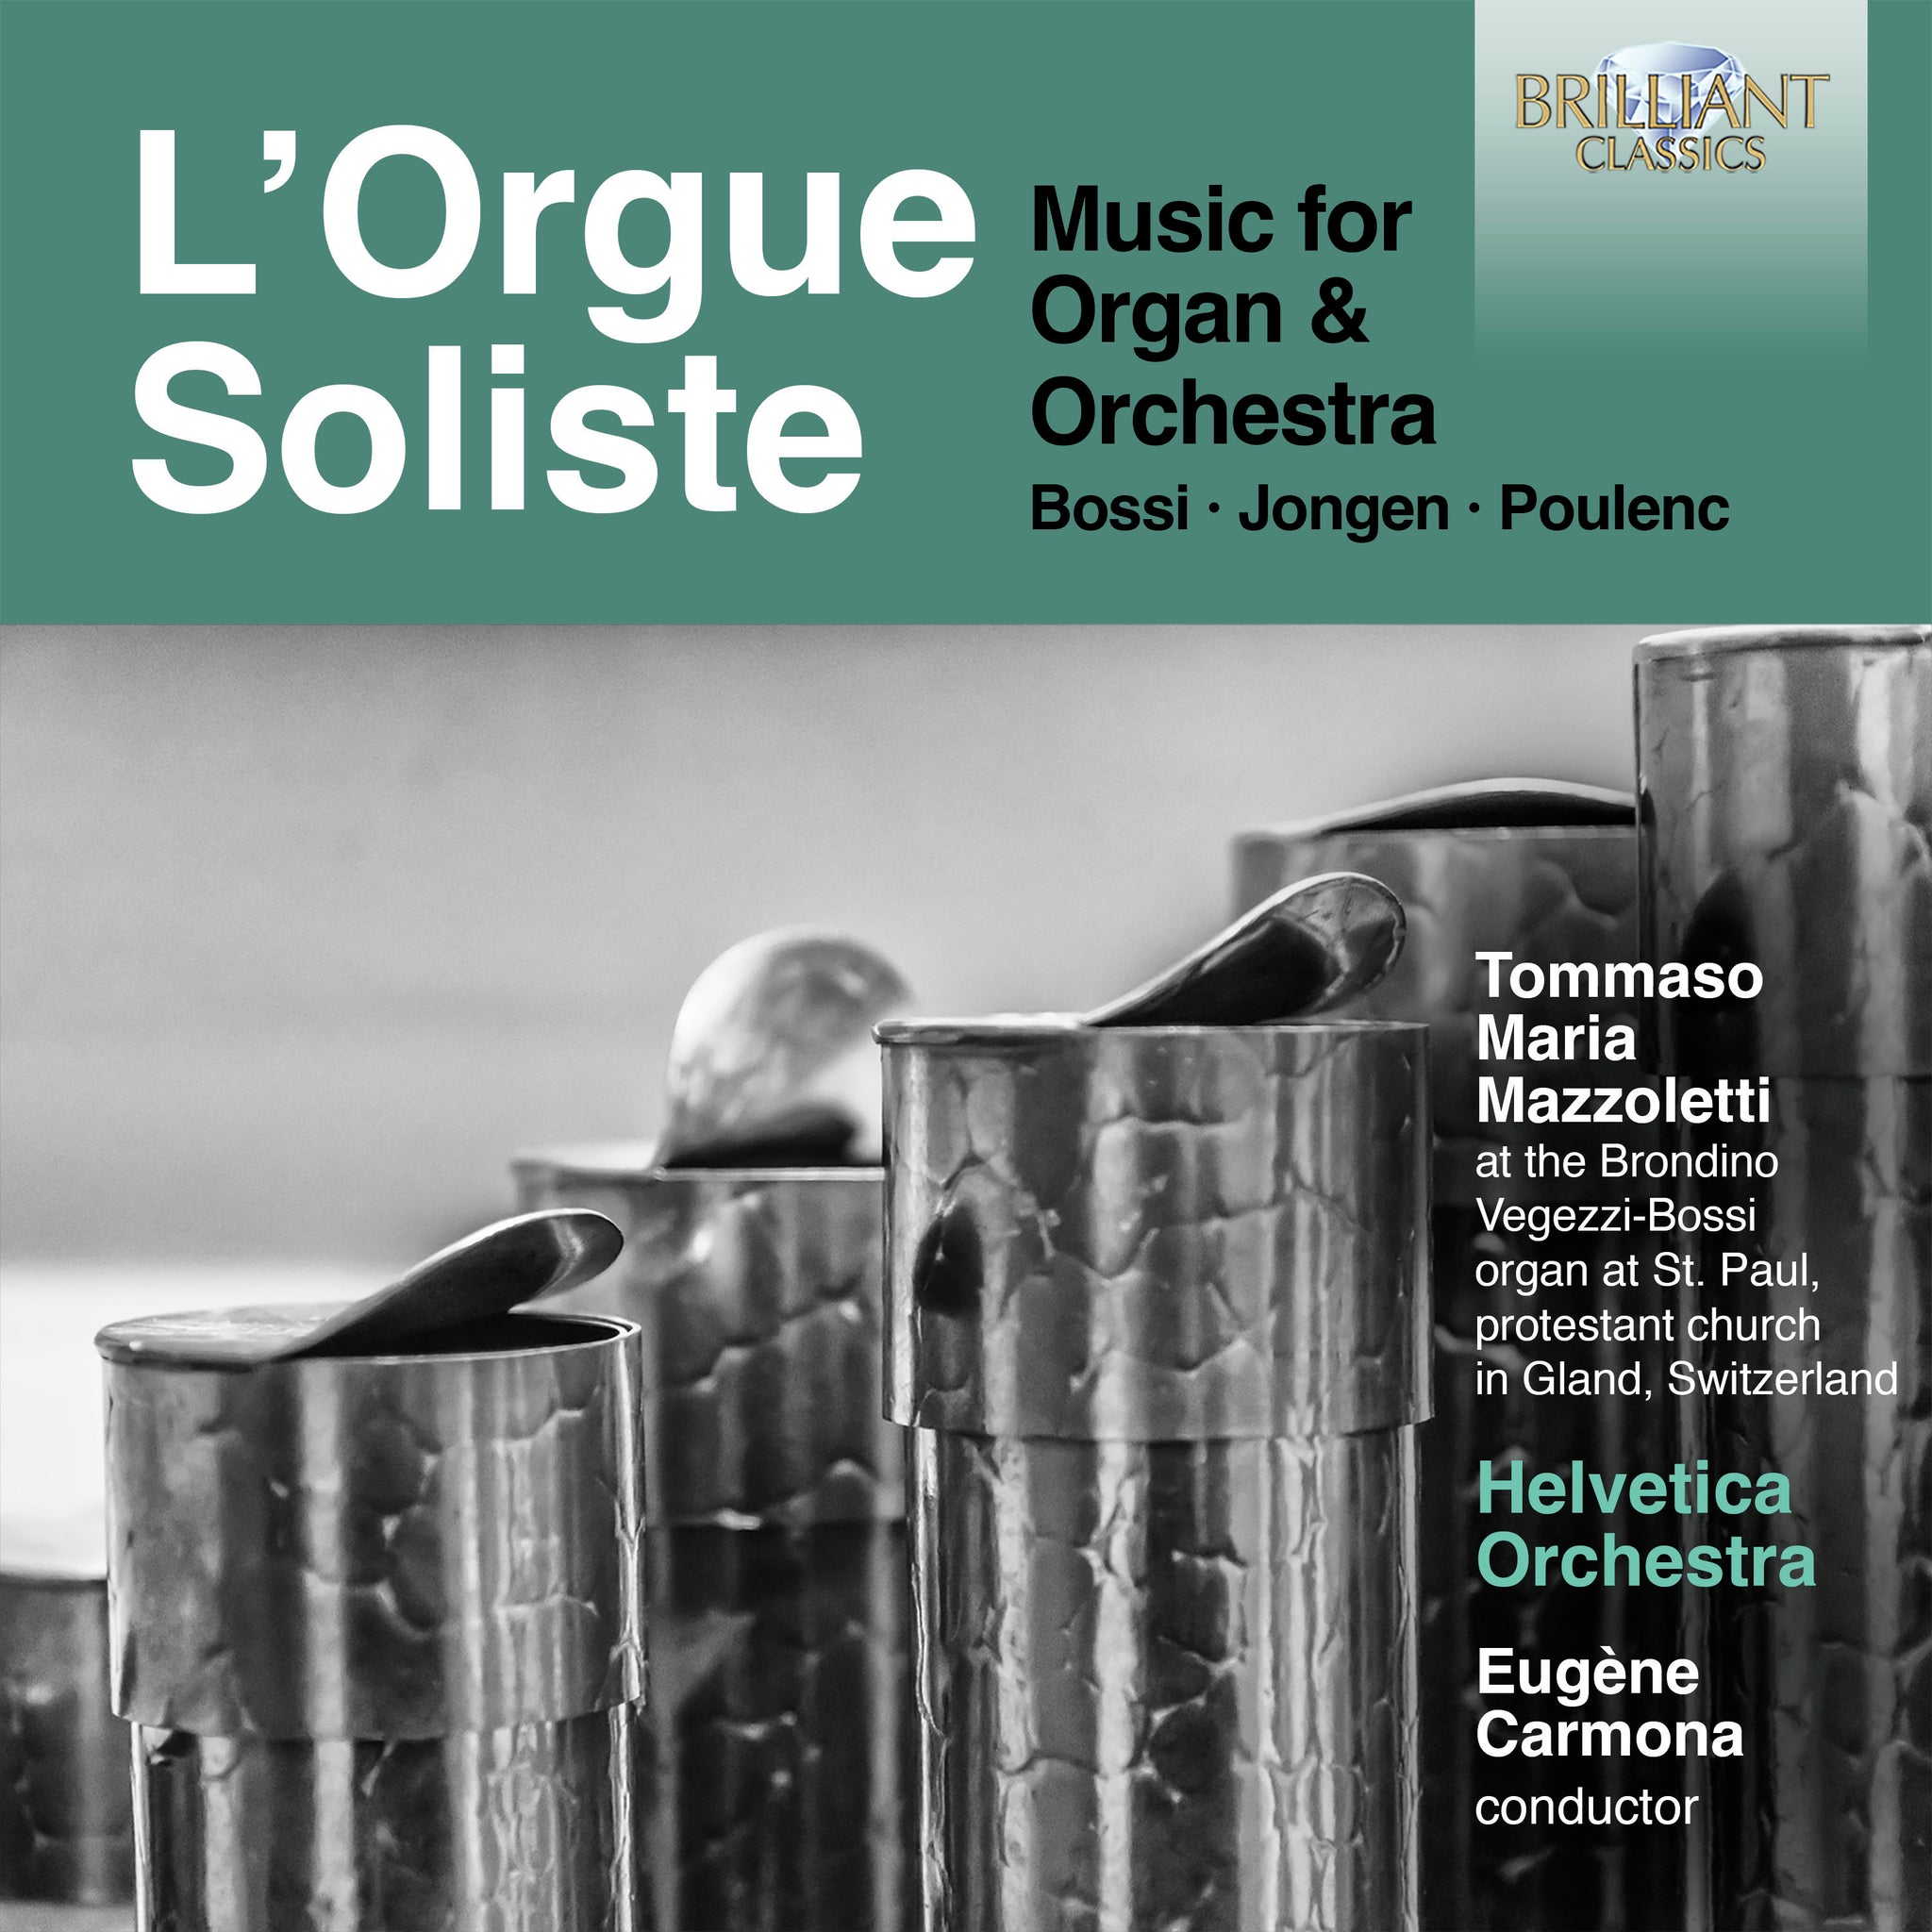 Music for Organ & Orchestra / Mazzoletti, Carmona, Helvetica Orchestra